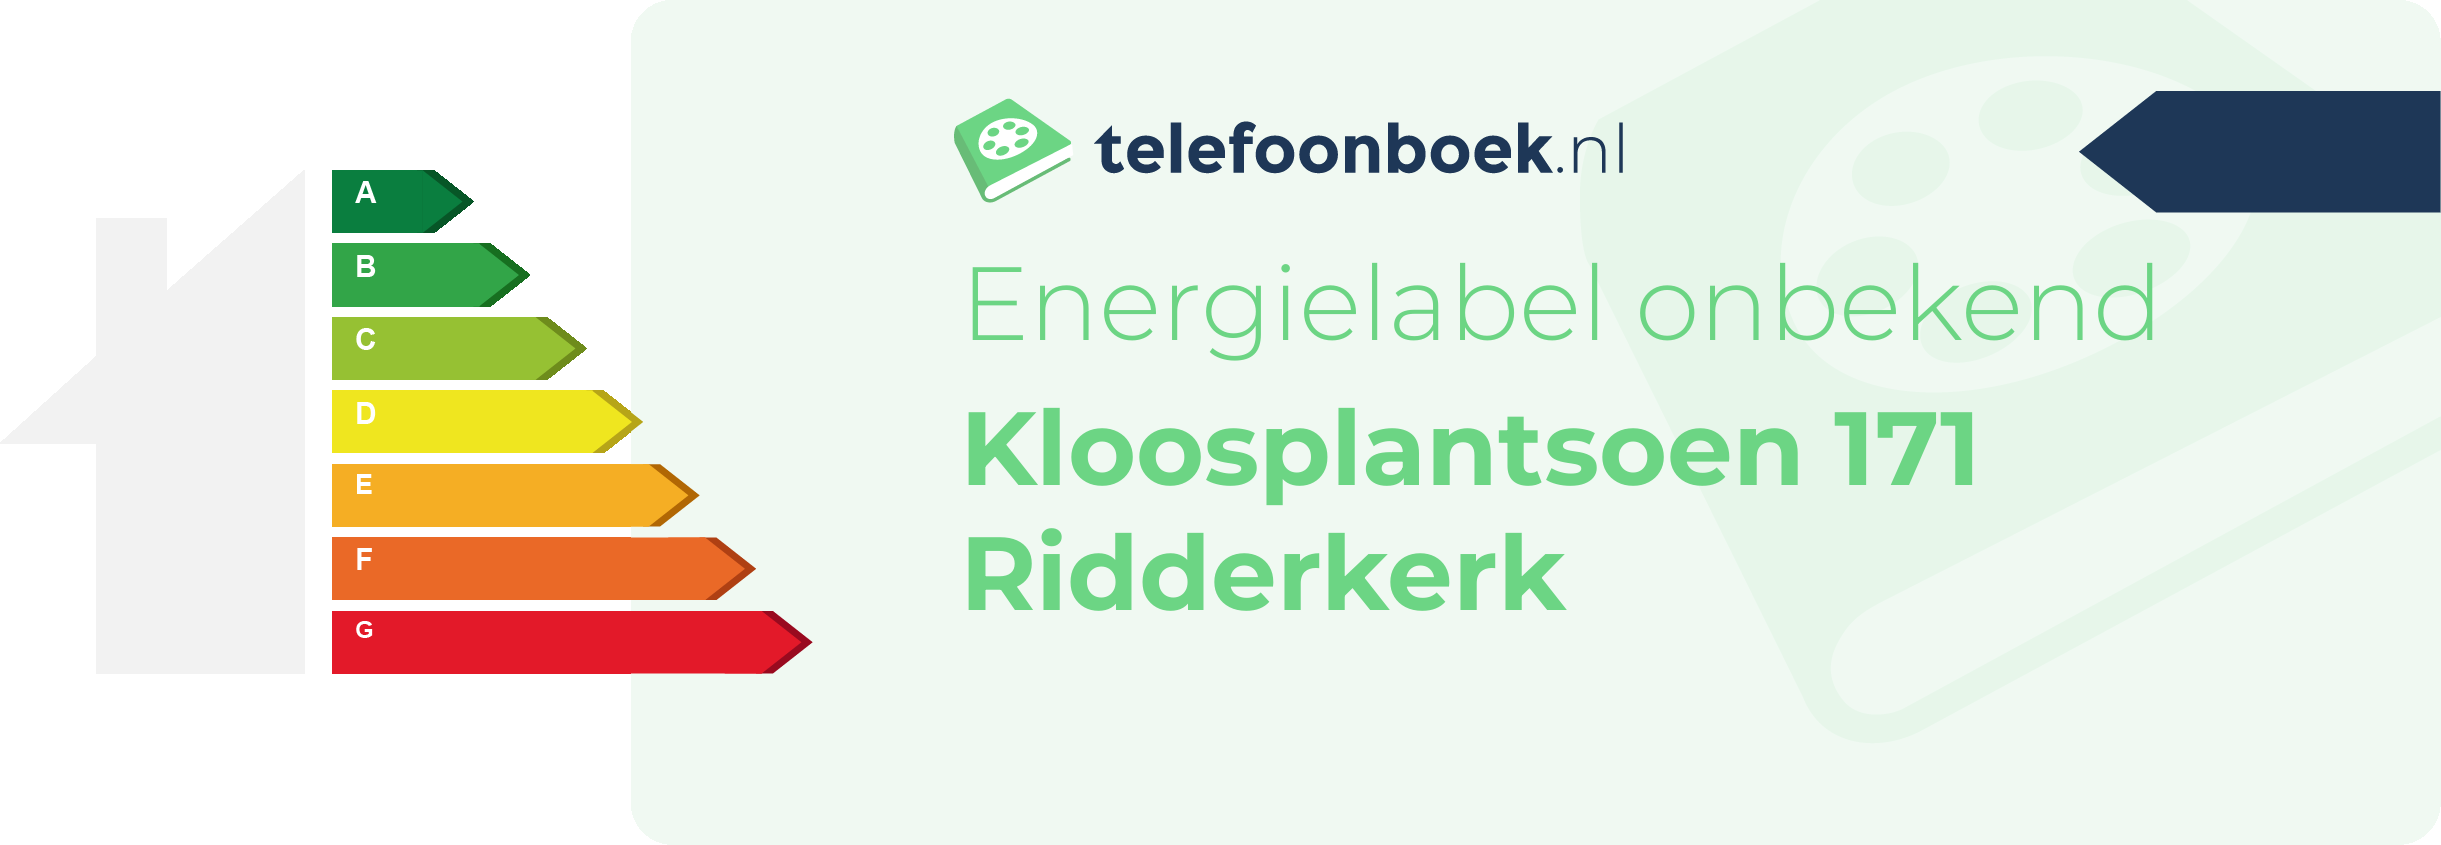 Energielabel Kloosplantsoen 171 Ridderkerk